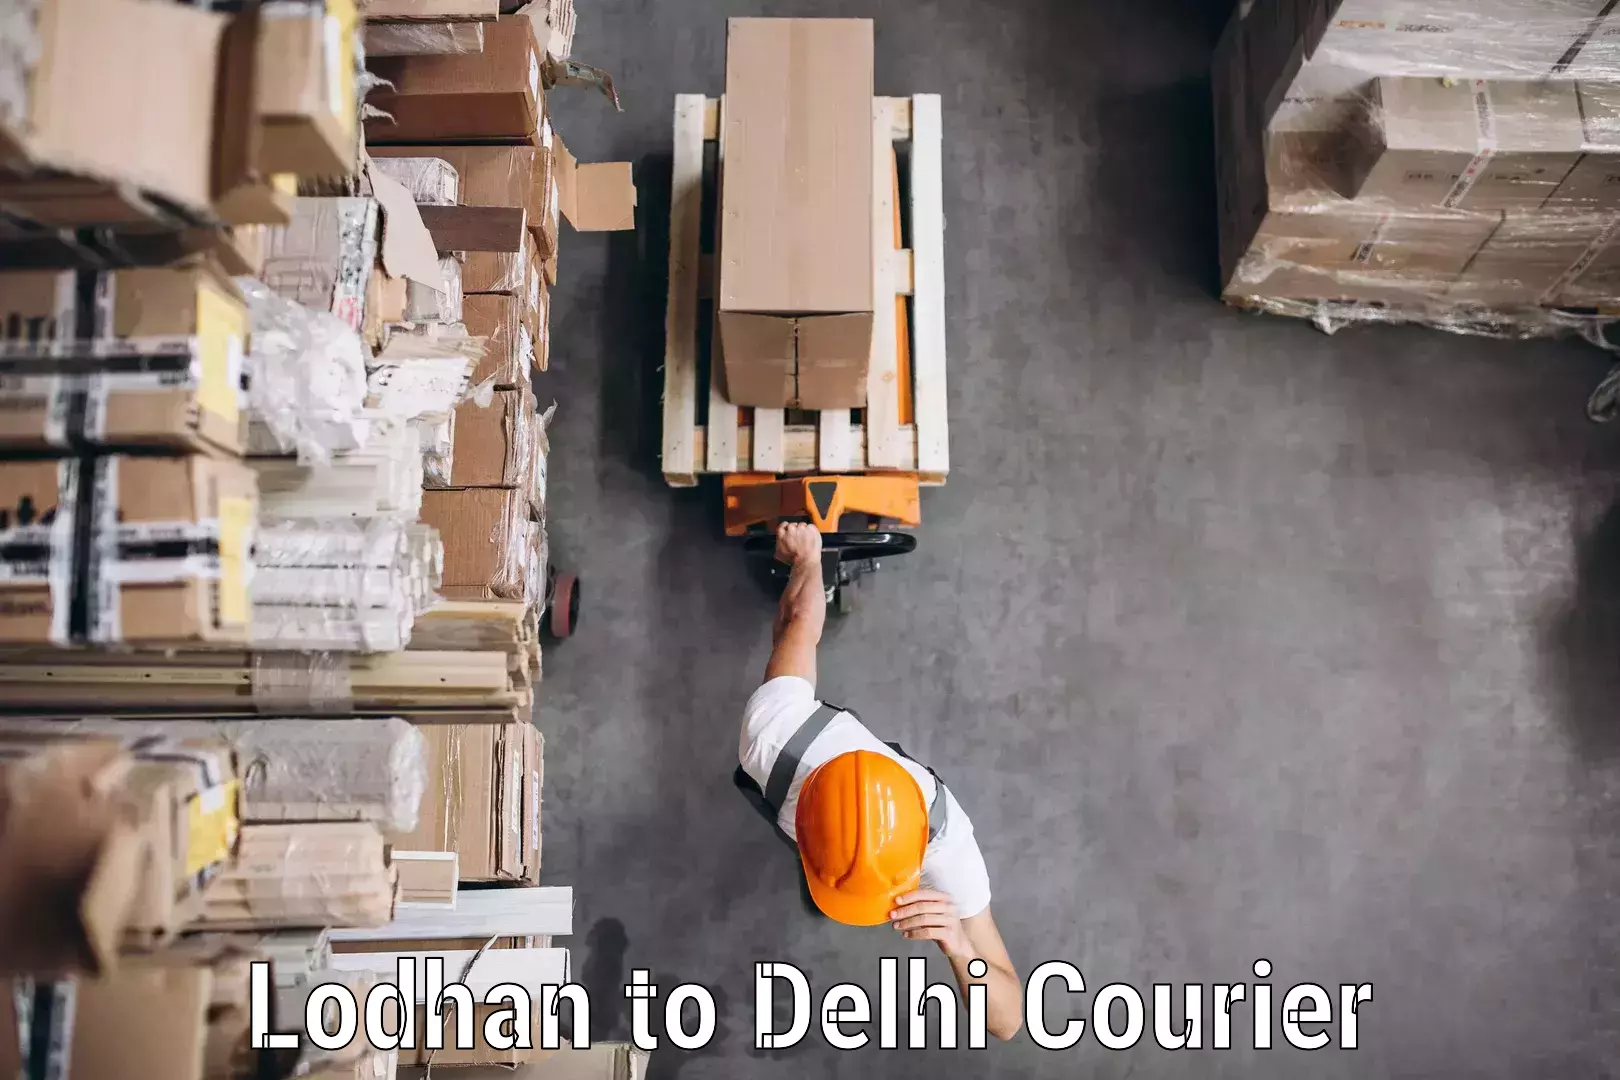 Bulk order courier Lodhan to University of Delhi